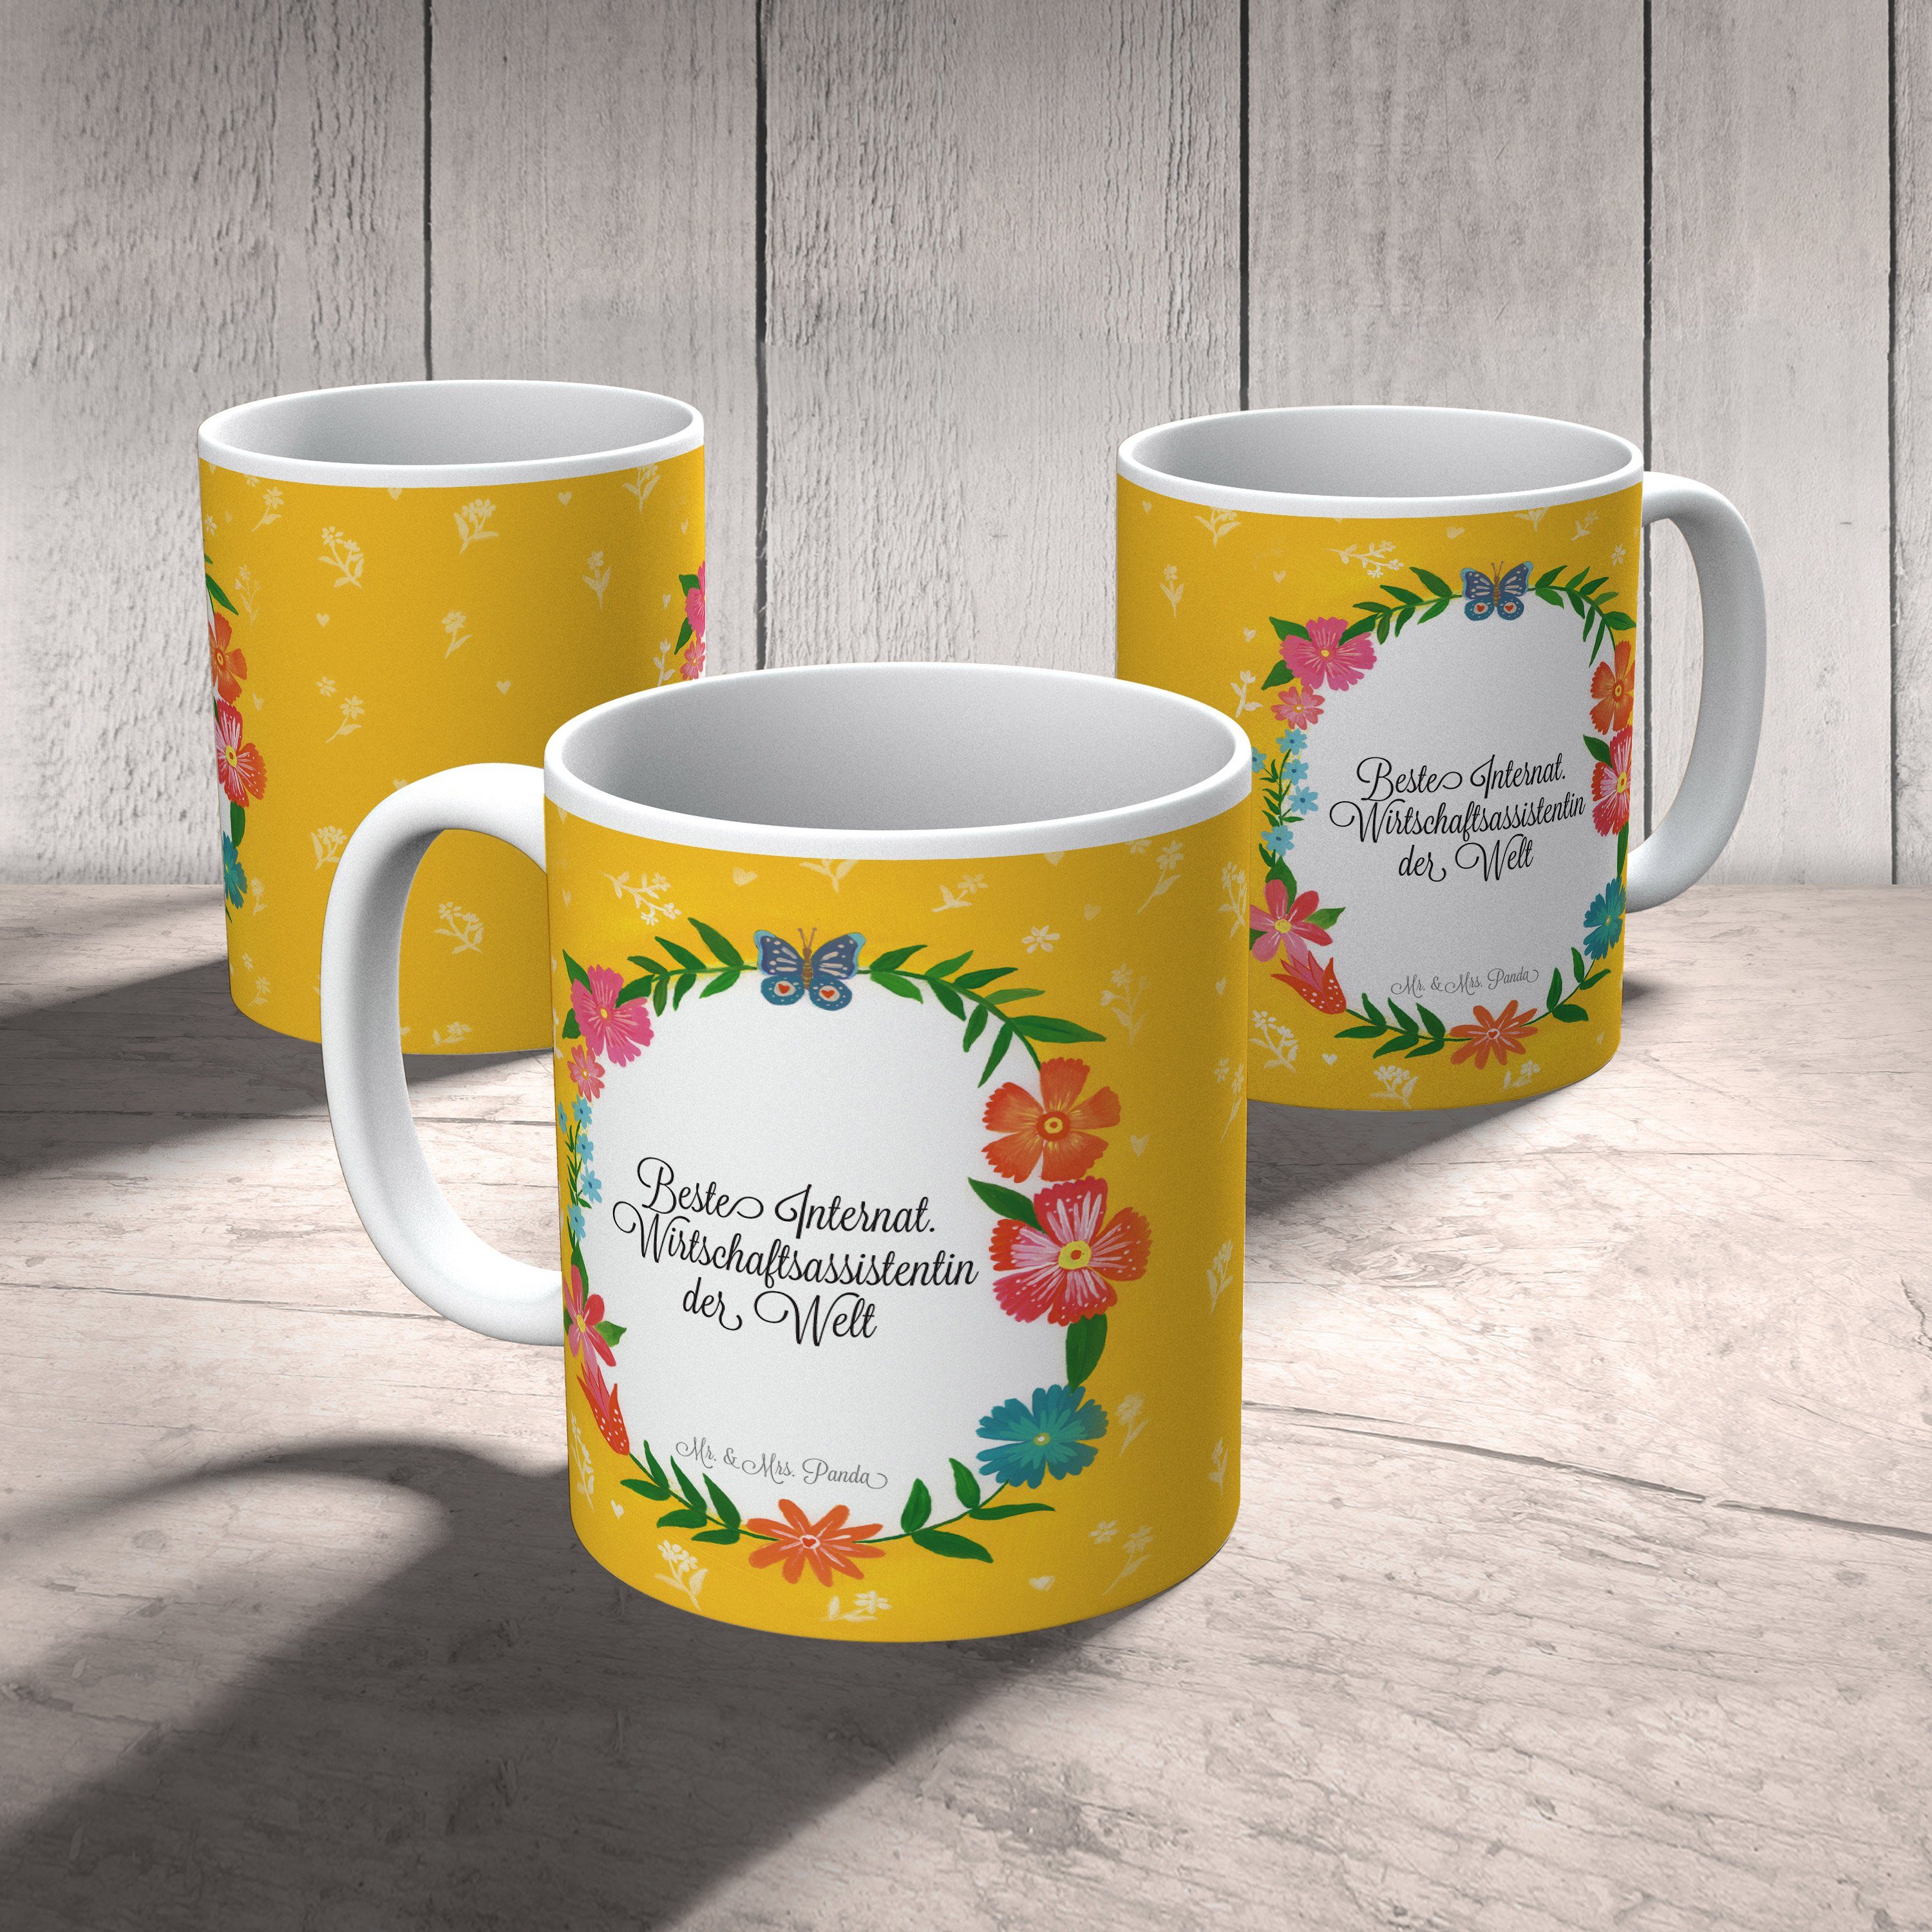 Mr. & Mrs. Panda Internationale Abschied, Wirtschaftsassistentin Tasse Geschenk, Keramik - Kaffeetas